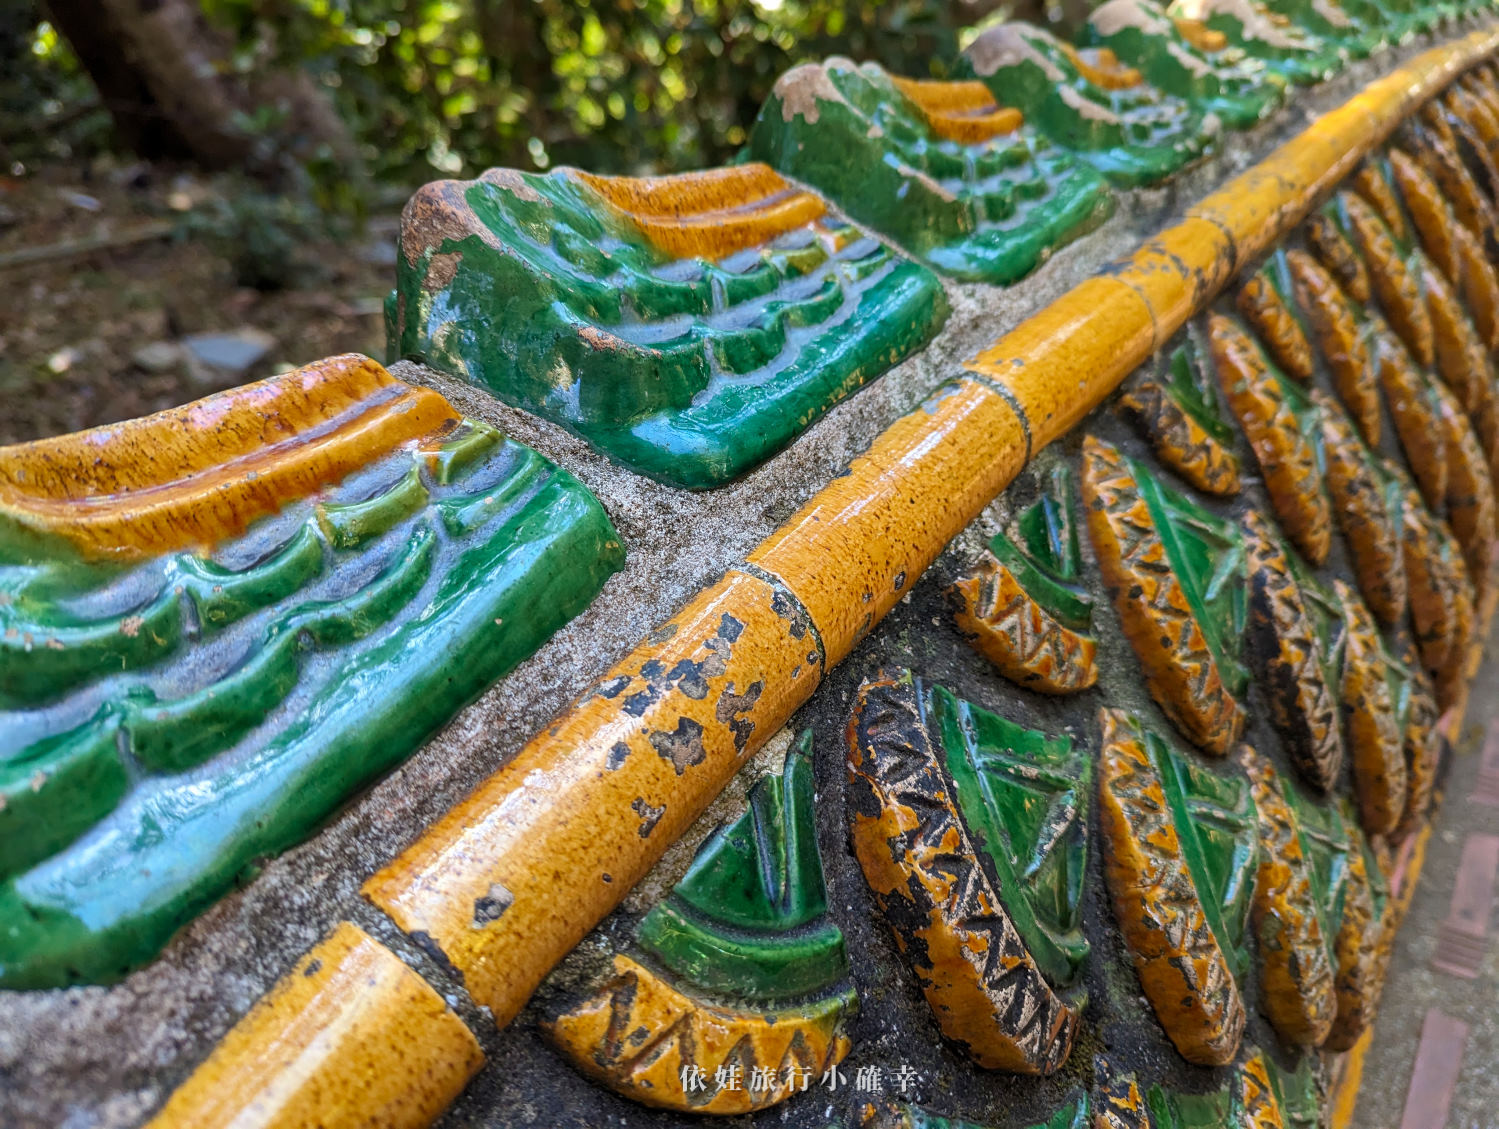 泰國清邁雙龍寺（素帖寺）超輕鬆坐纜車到寺廟，位於素帖山國家公園（內附門票資訊）